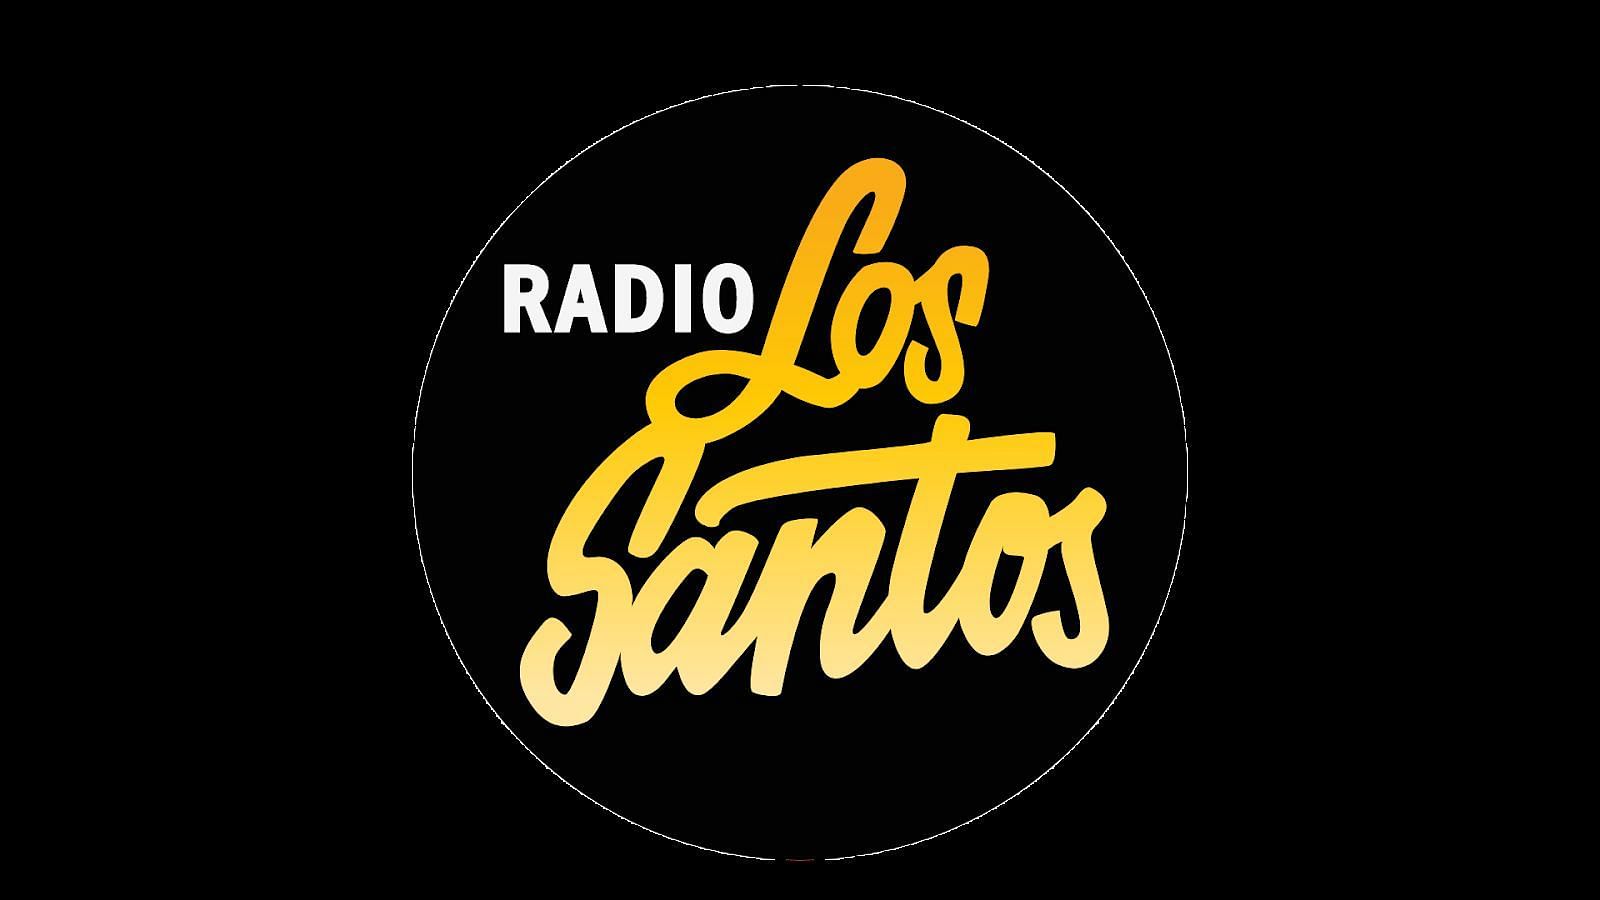 Radio Los Santos in GTA 5